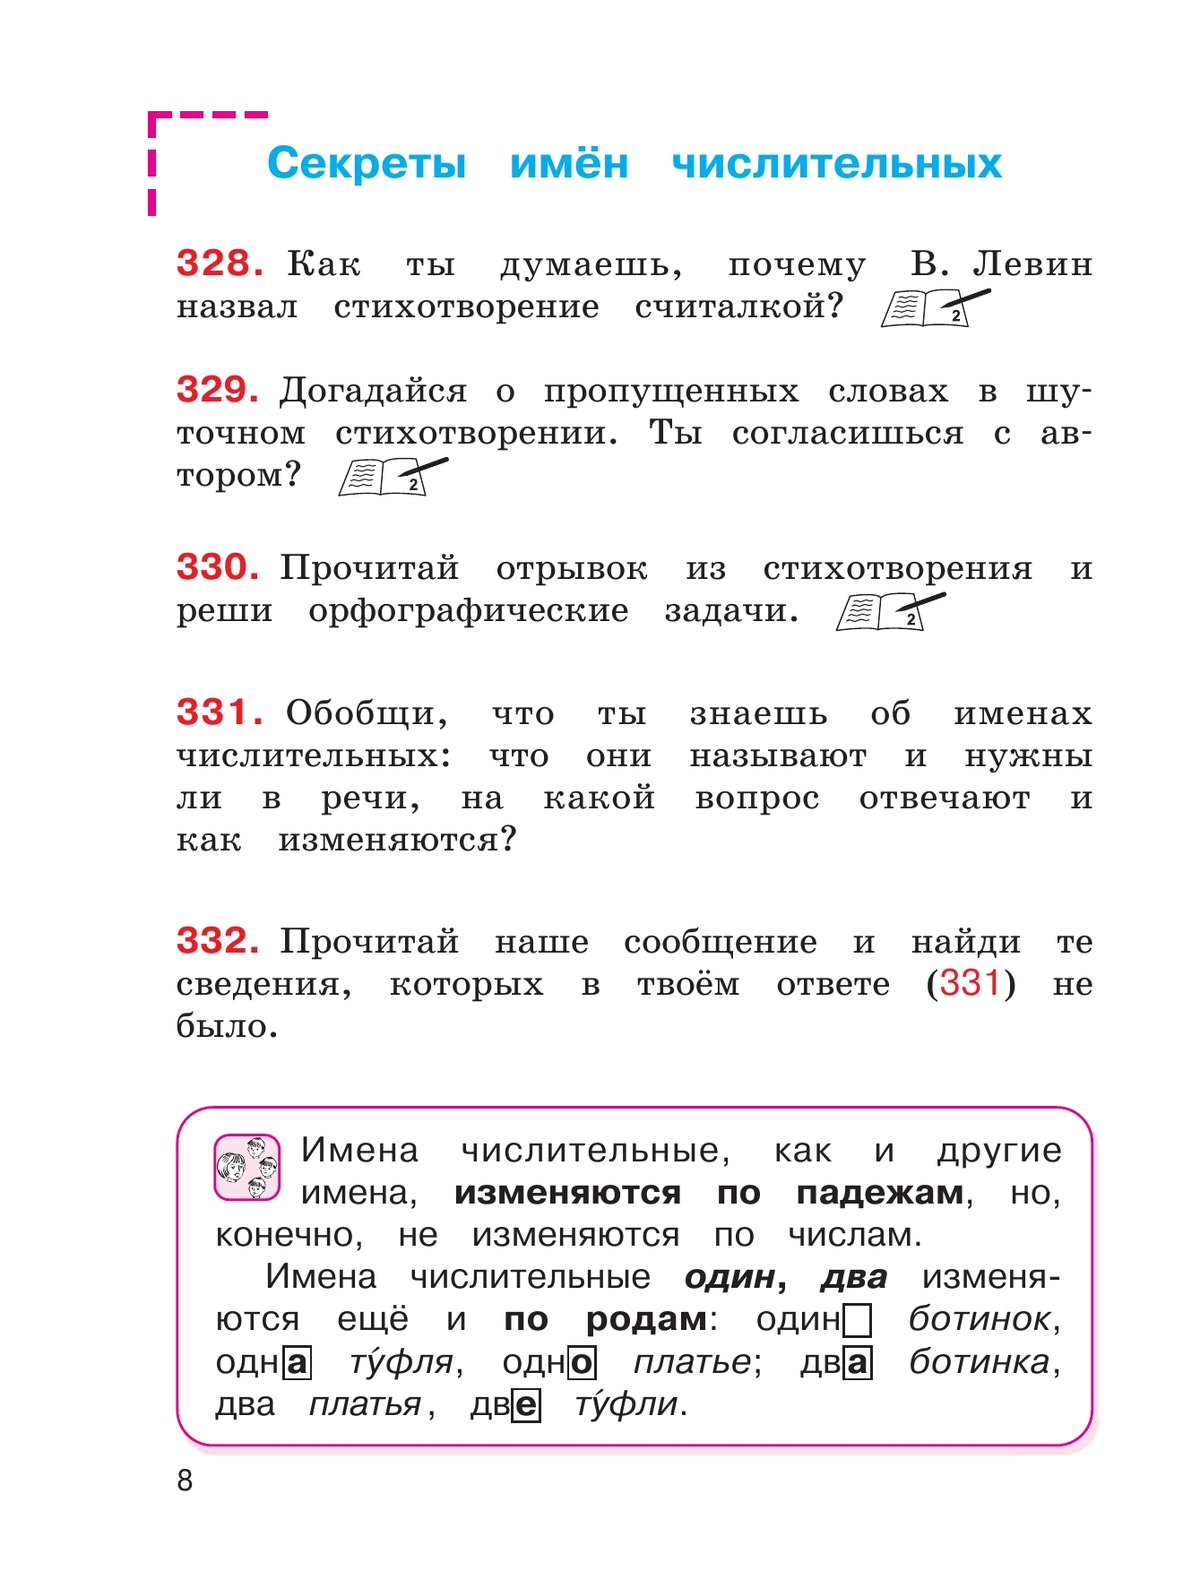 Русский язык. 4 класс. Учебник. В 2 ч. Часть 2 5